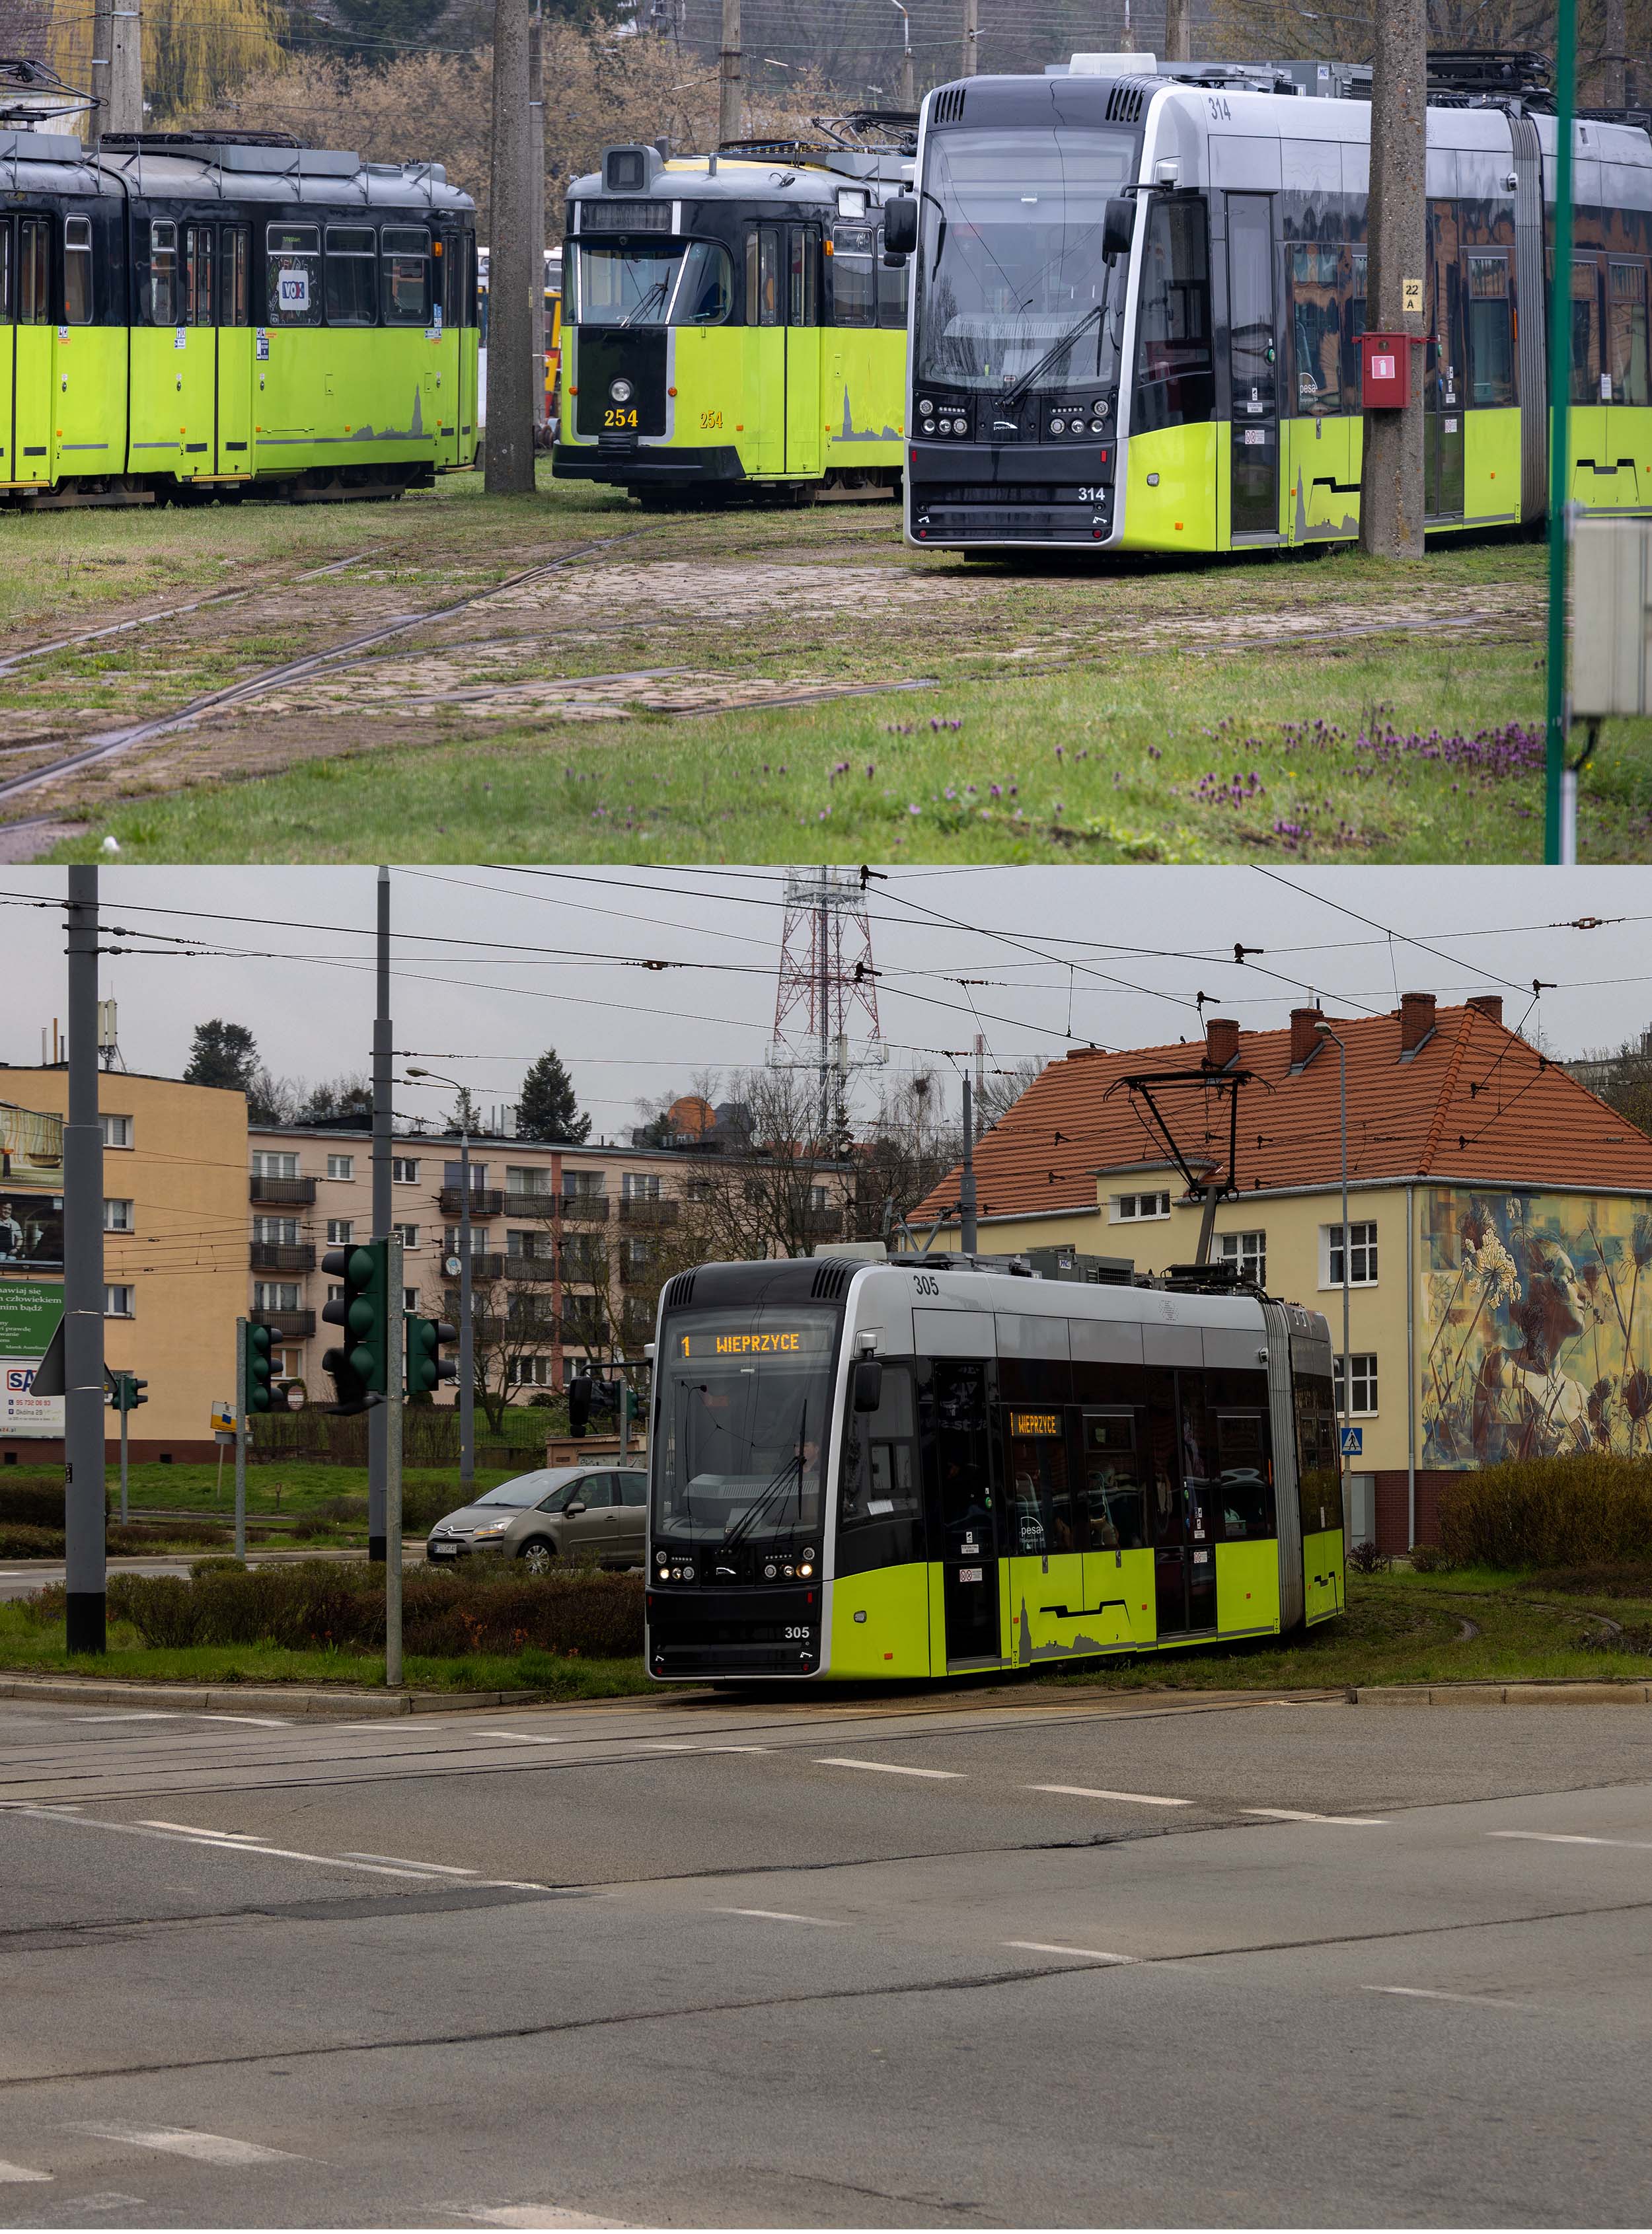 Gorzow tram